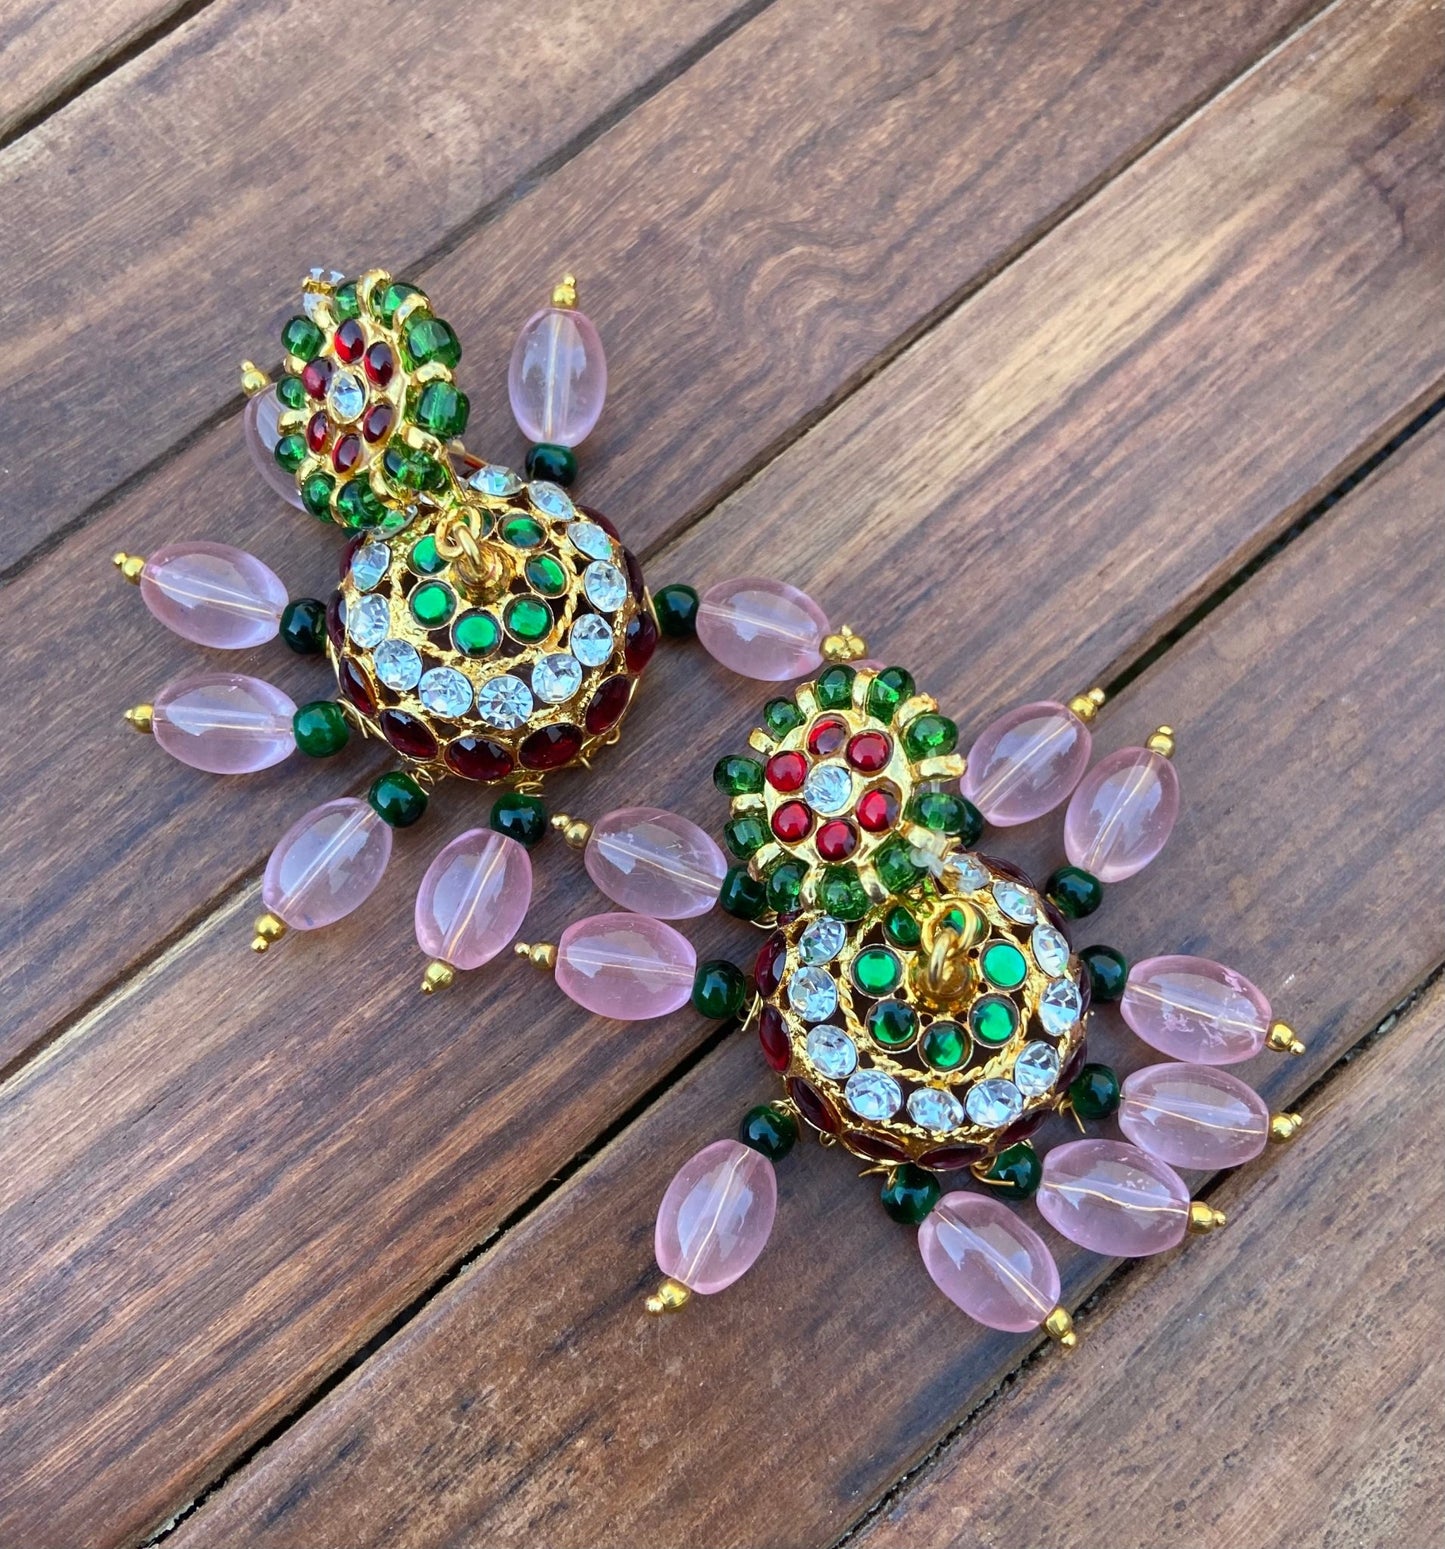 2 in 1 monalisa beads earrings ( stud+jhumka) - Alluring Accessories